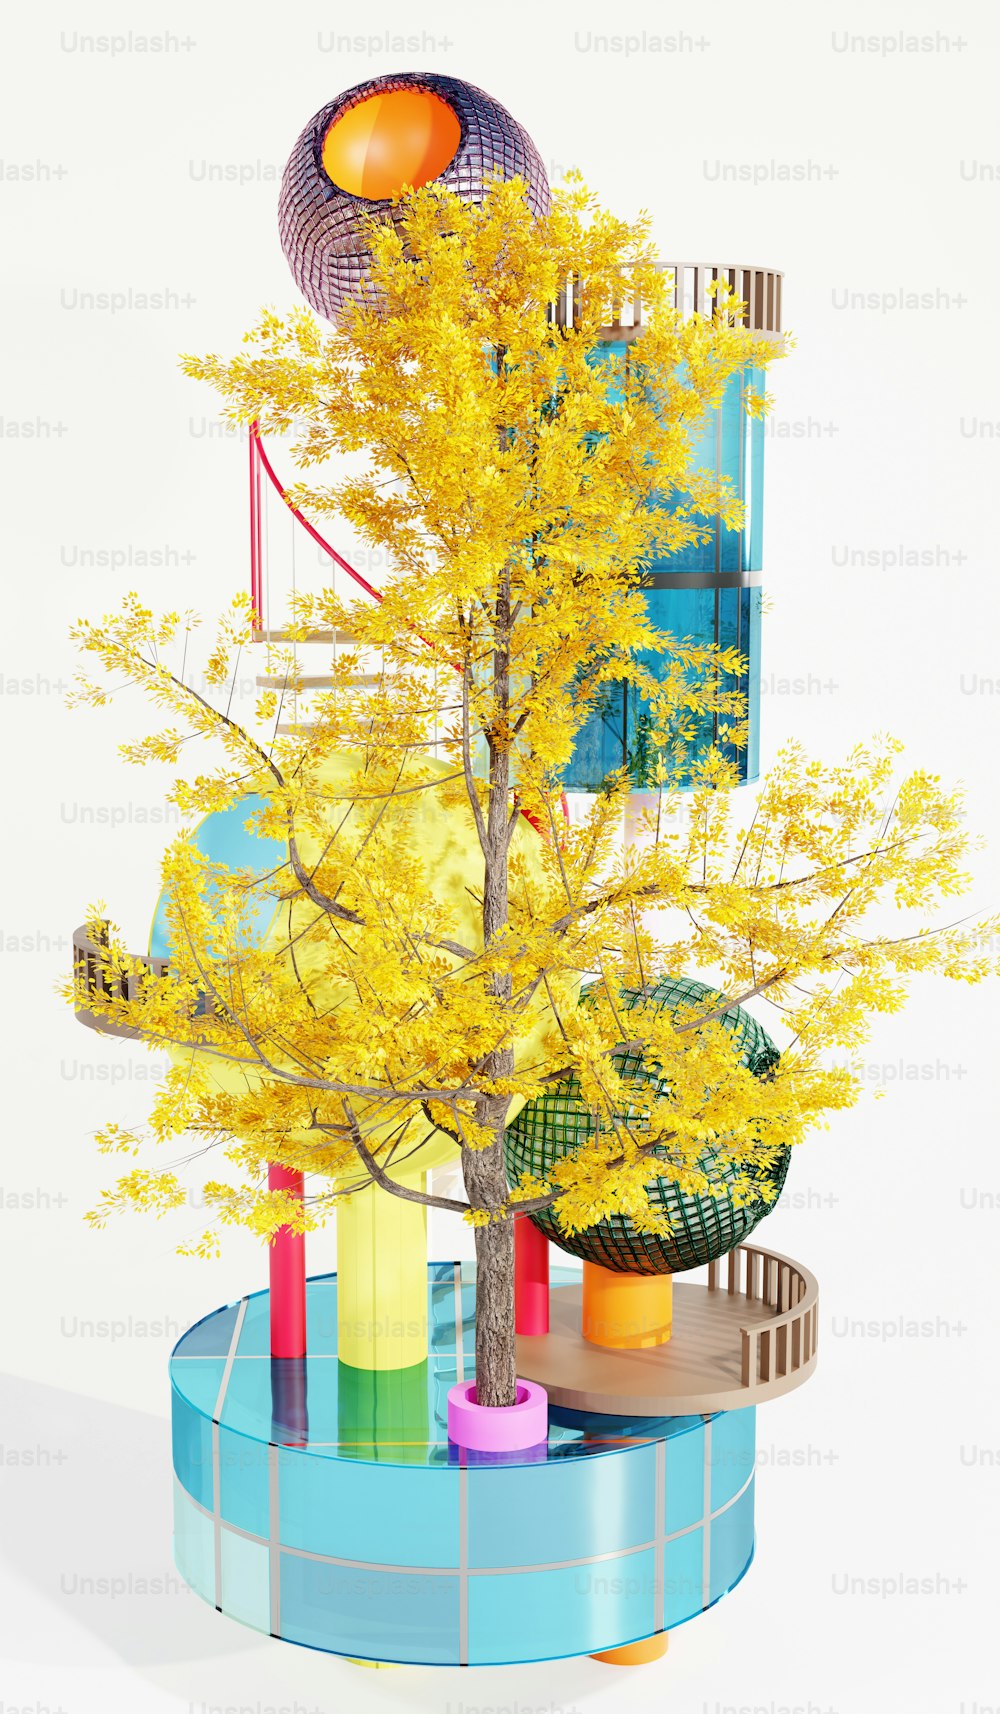 Modell eines Baumes mit gelben Blättern